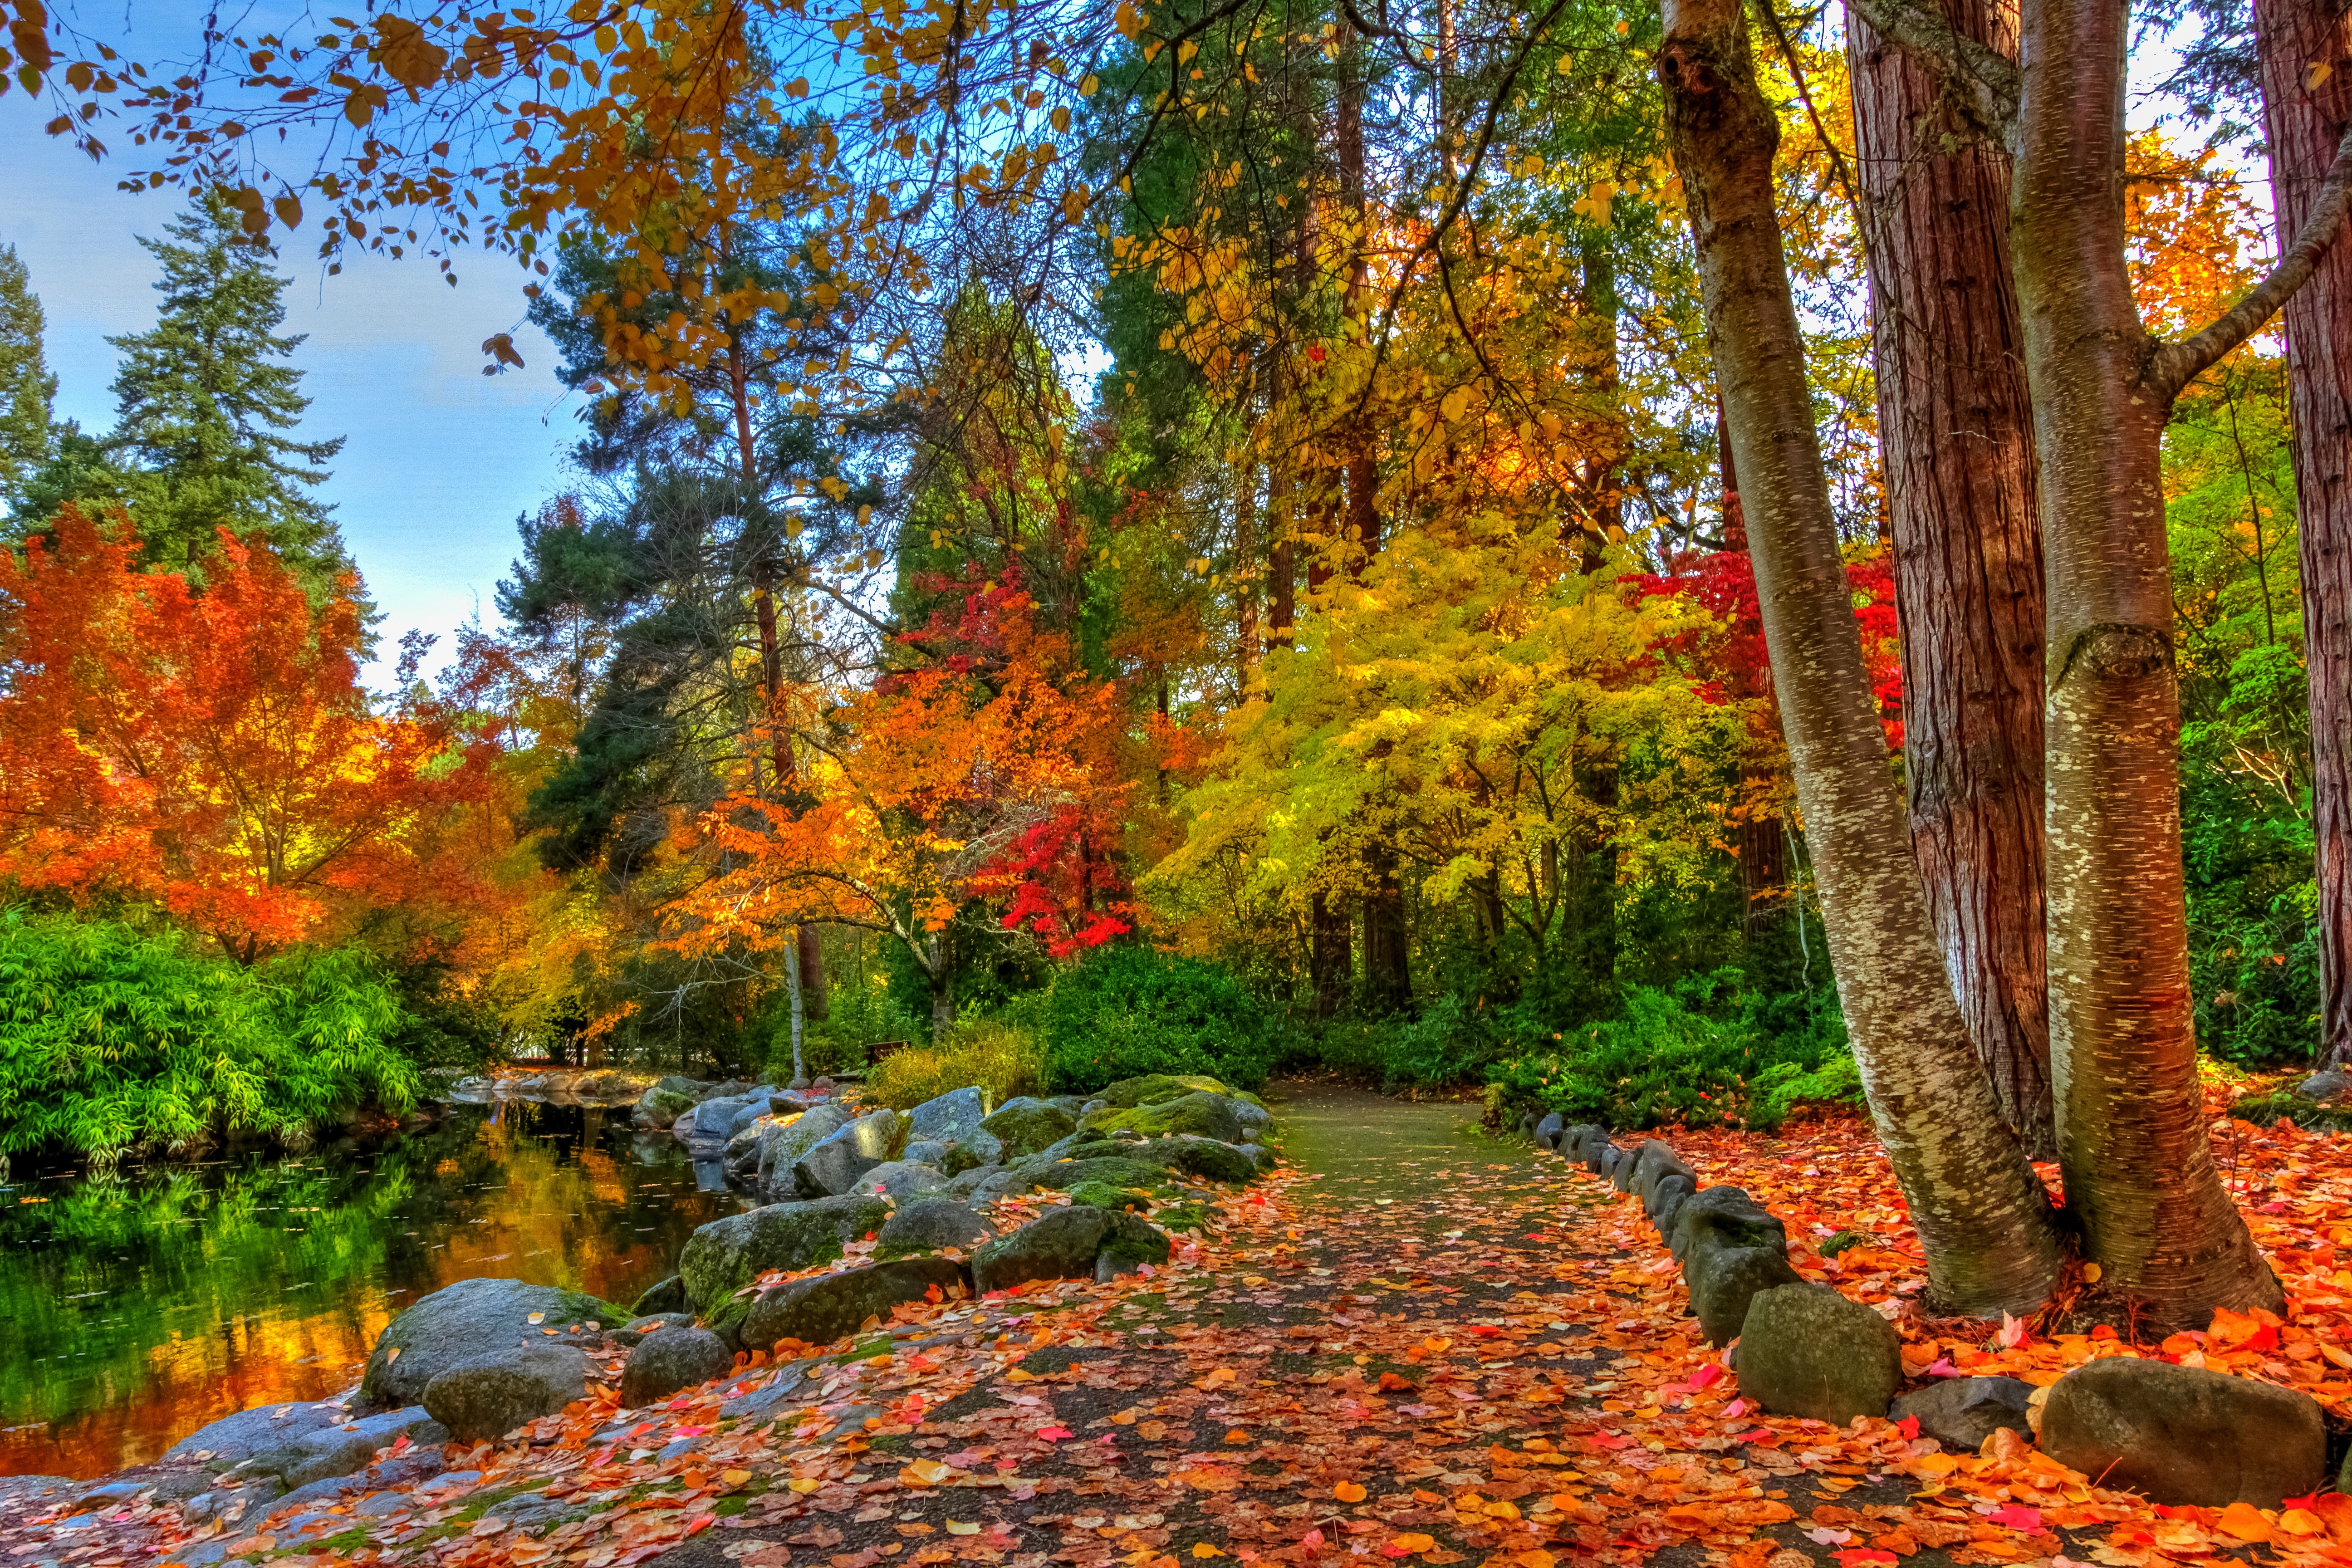 Mùa thu: Cùng chiêm ngưỡng những hình ảnh đẹp diệu kỳ của mùa thu và những cánh rừng rực rỡ lung linh màu sắc làm say đắm bạn bởi sự tĩnh lặng và yên bình tuyệt vời.